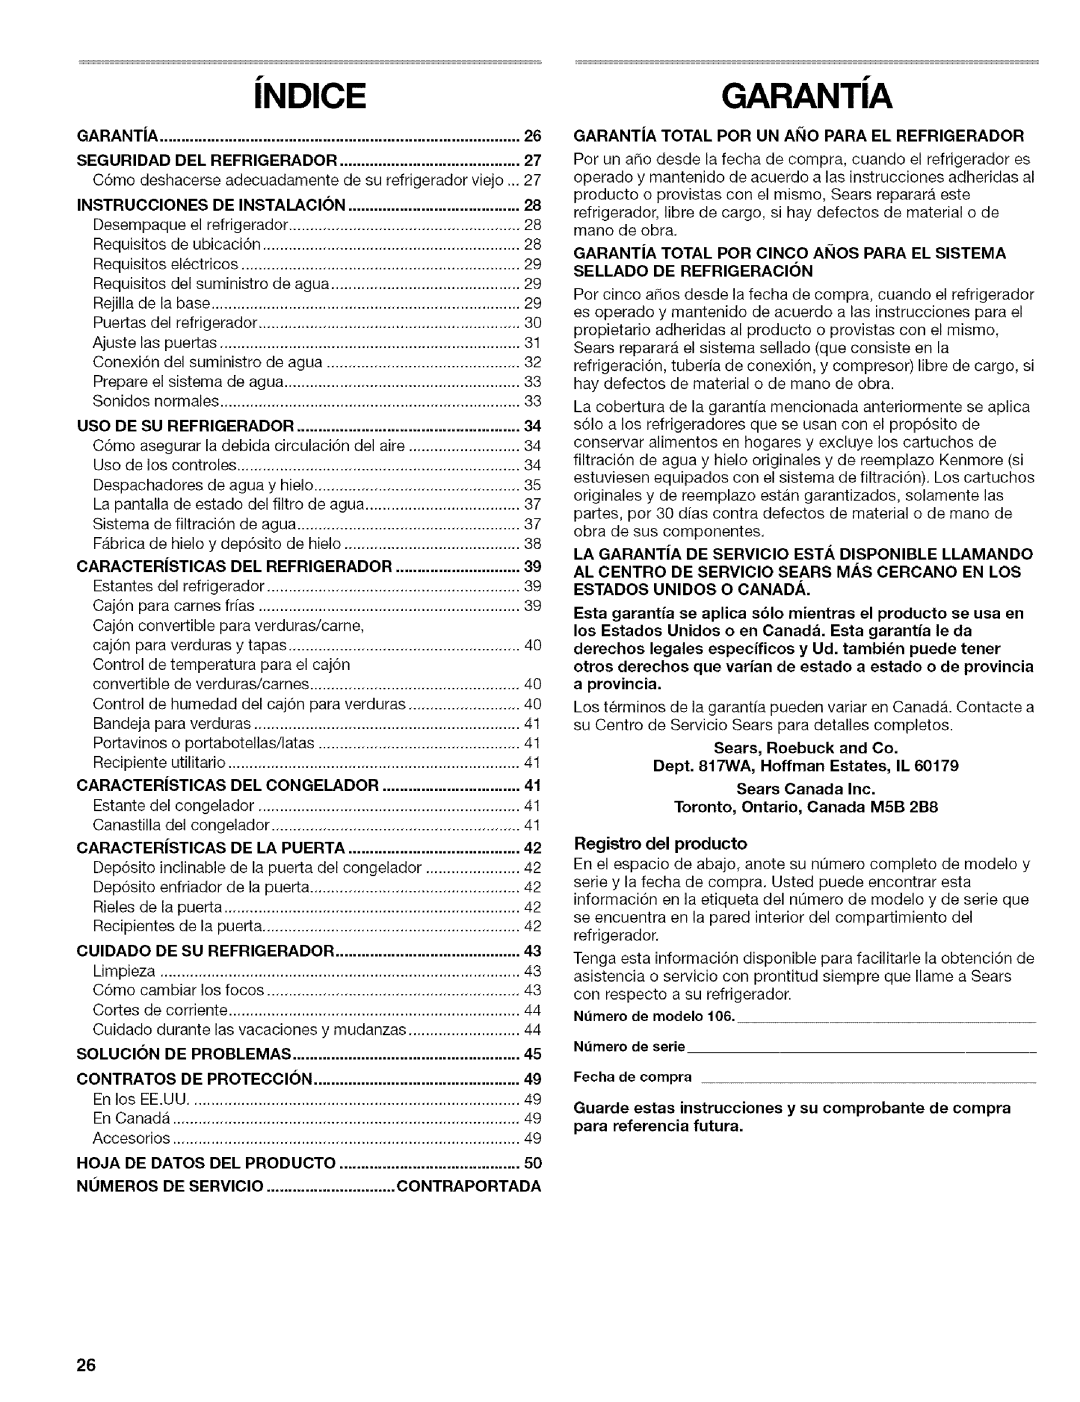 Kenmore 2305761A manual iNDICEGARANTIA, Garantia, Caracter|Sticas, De La Puerta, CUlDADO, Solucion, Contratos De Proteccion 